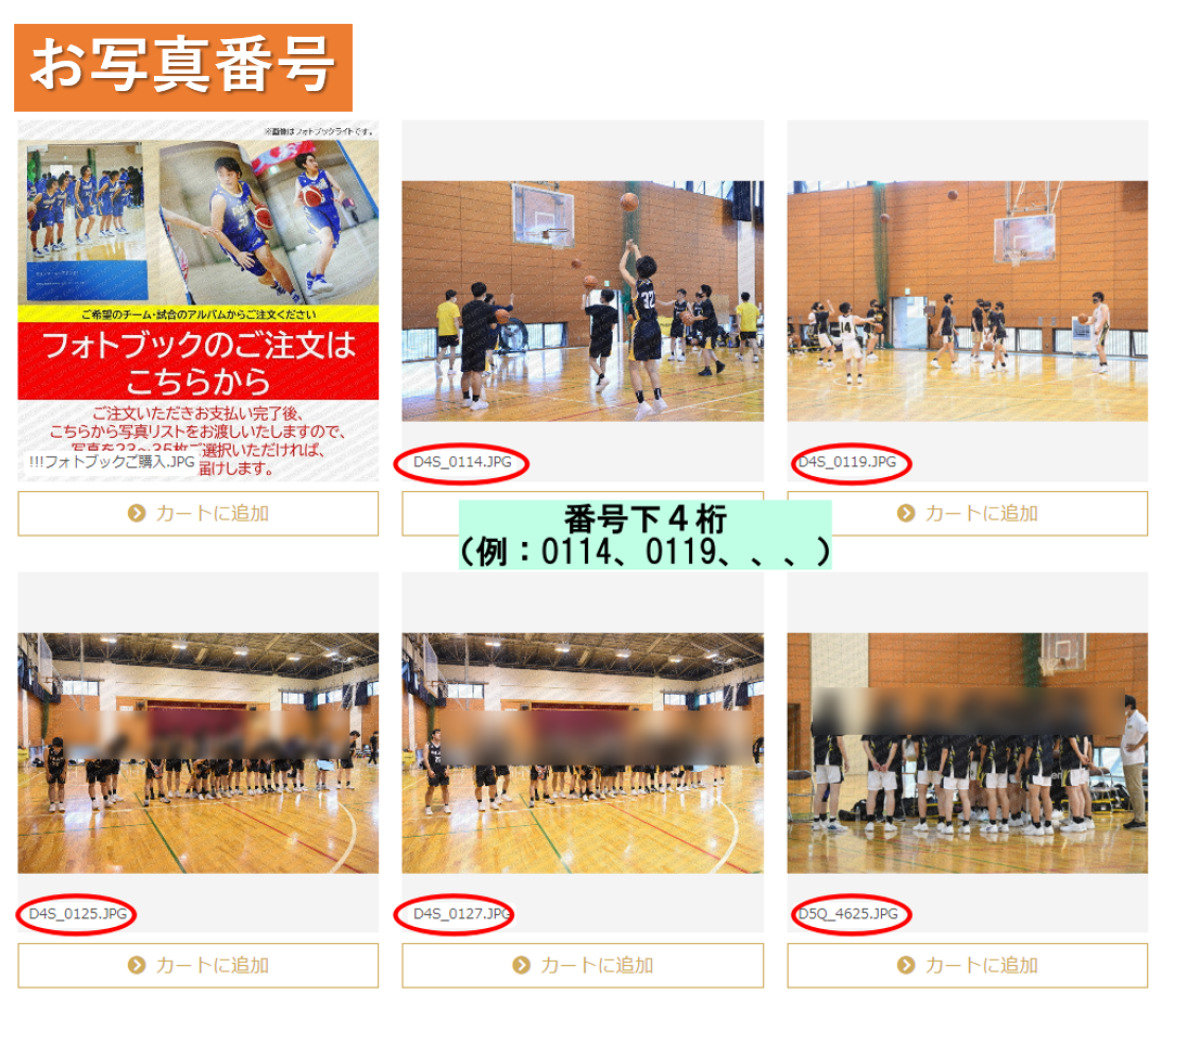 フォトブックスタンダード(A5・24P) | 神奈川県バスケットボール大会 